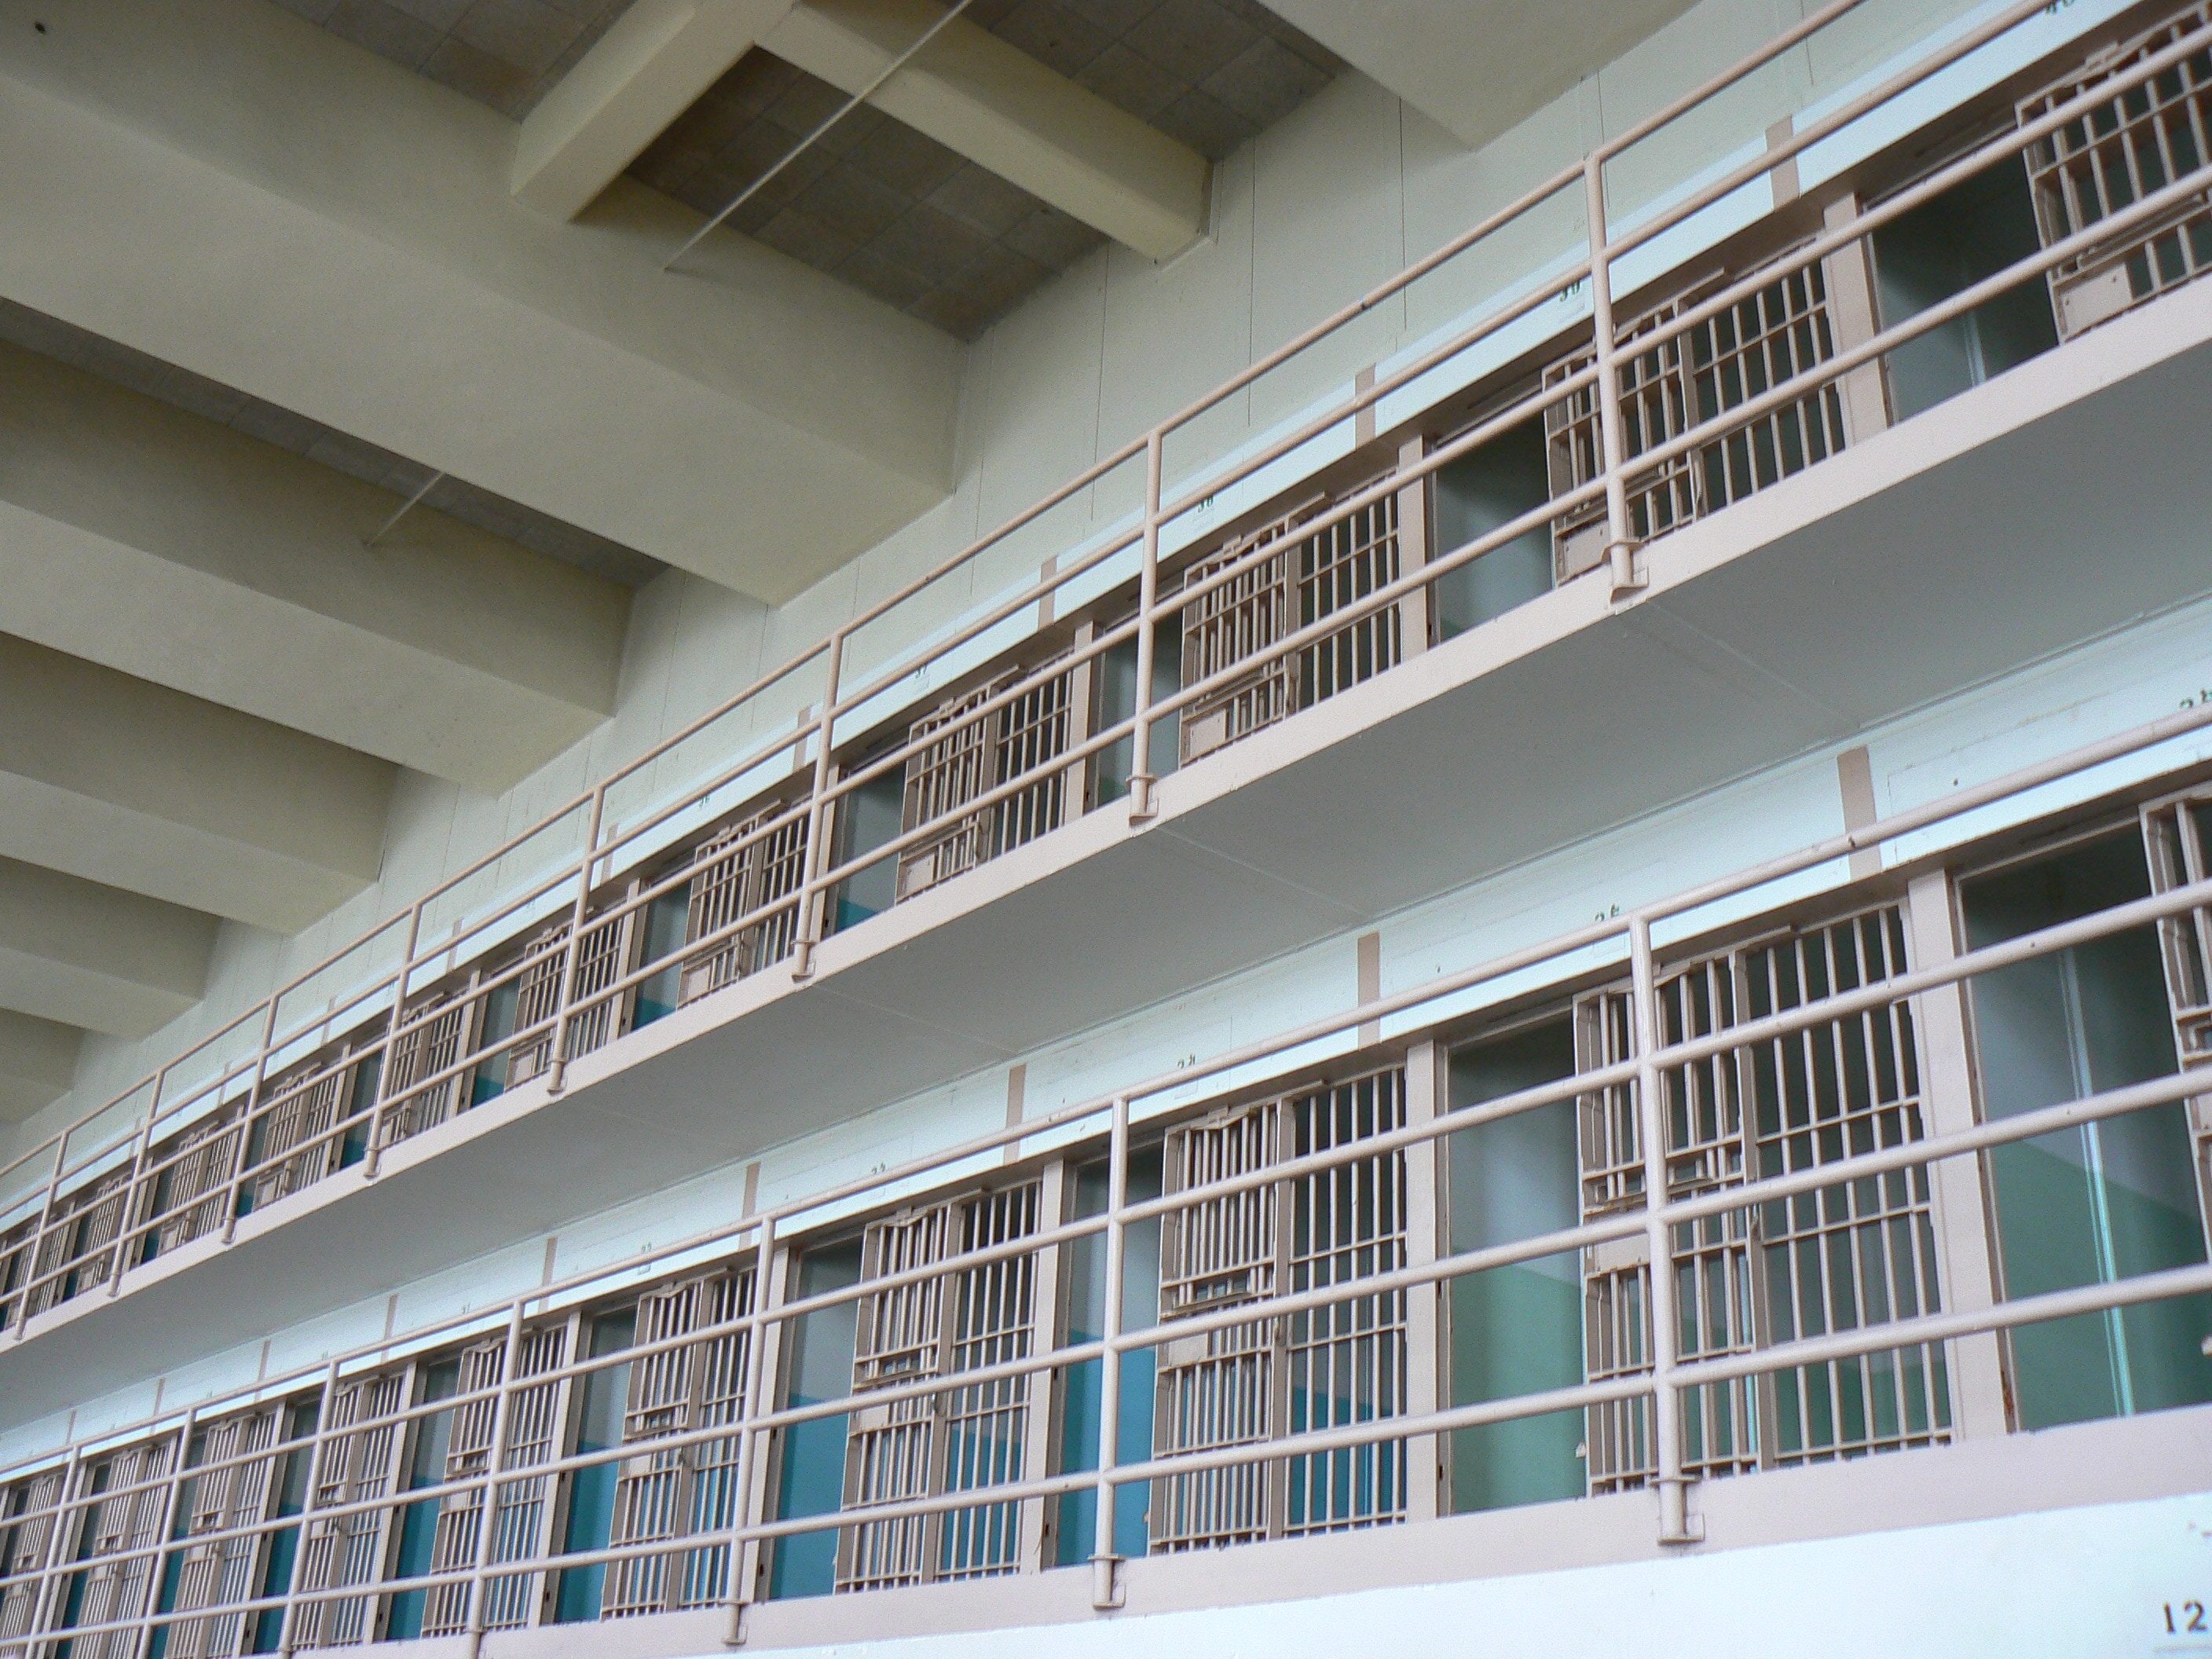 Alcatraz, Prison Wing, Prison, prison, law